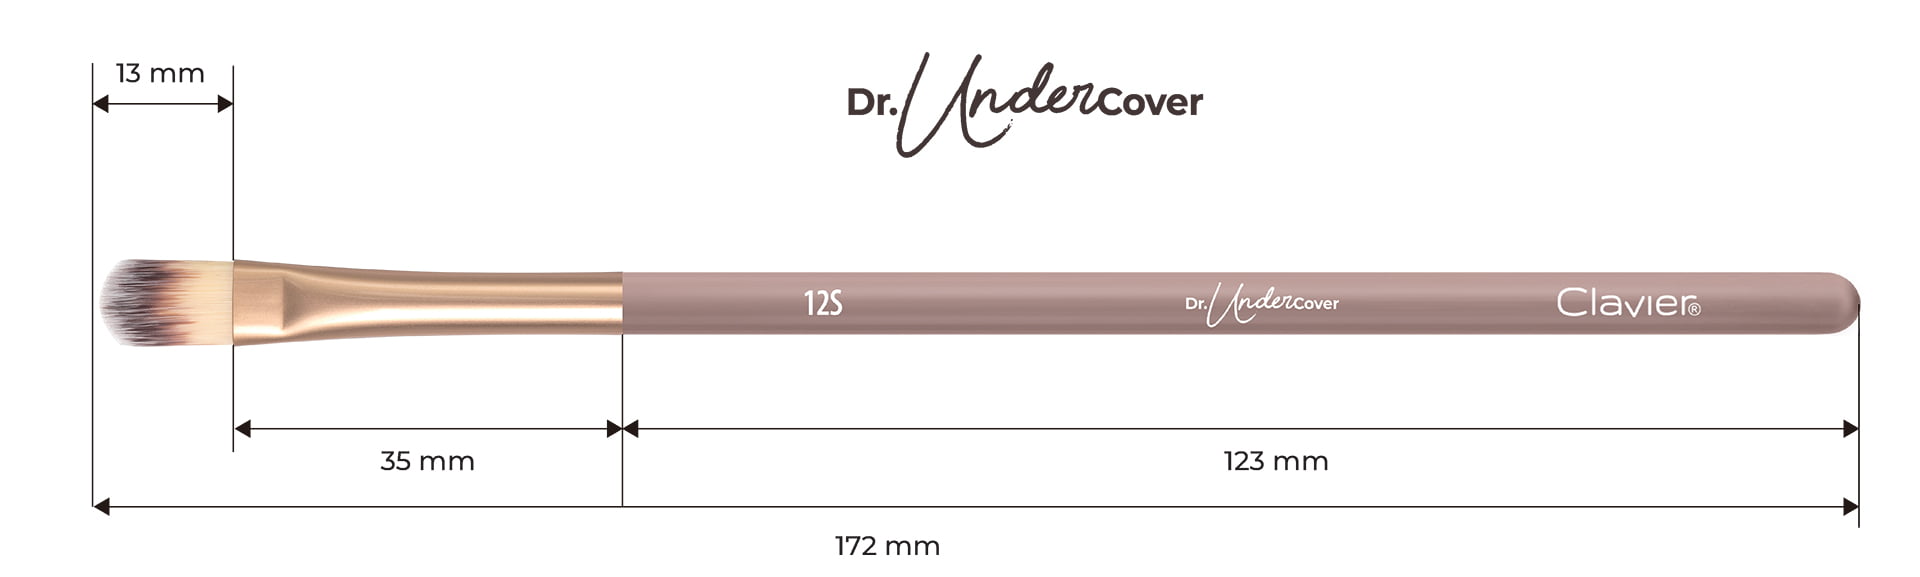 Pędzel do maskowania, nakładania, z włosia naturalnego - "Dr. UnderCover" 12S - Clavier.pl